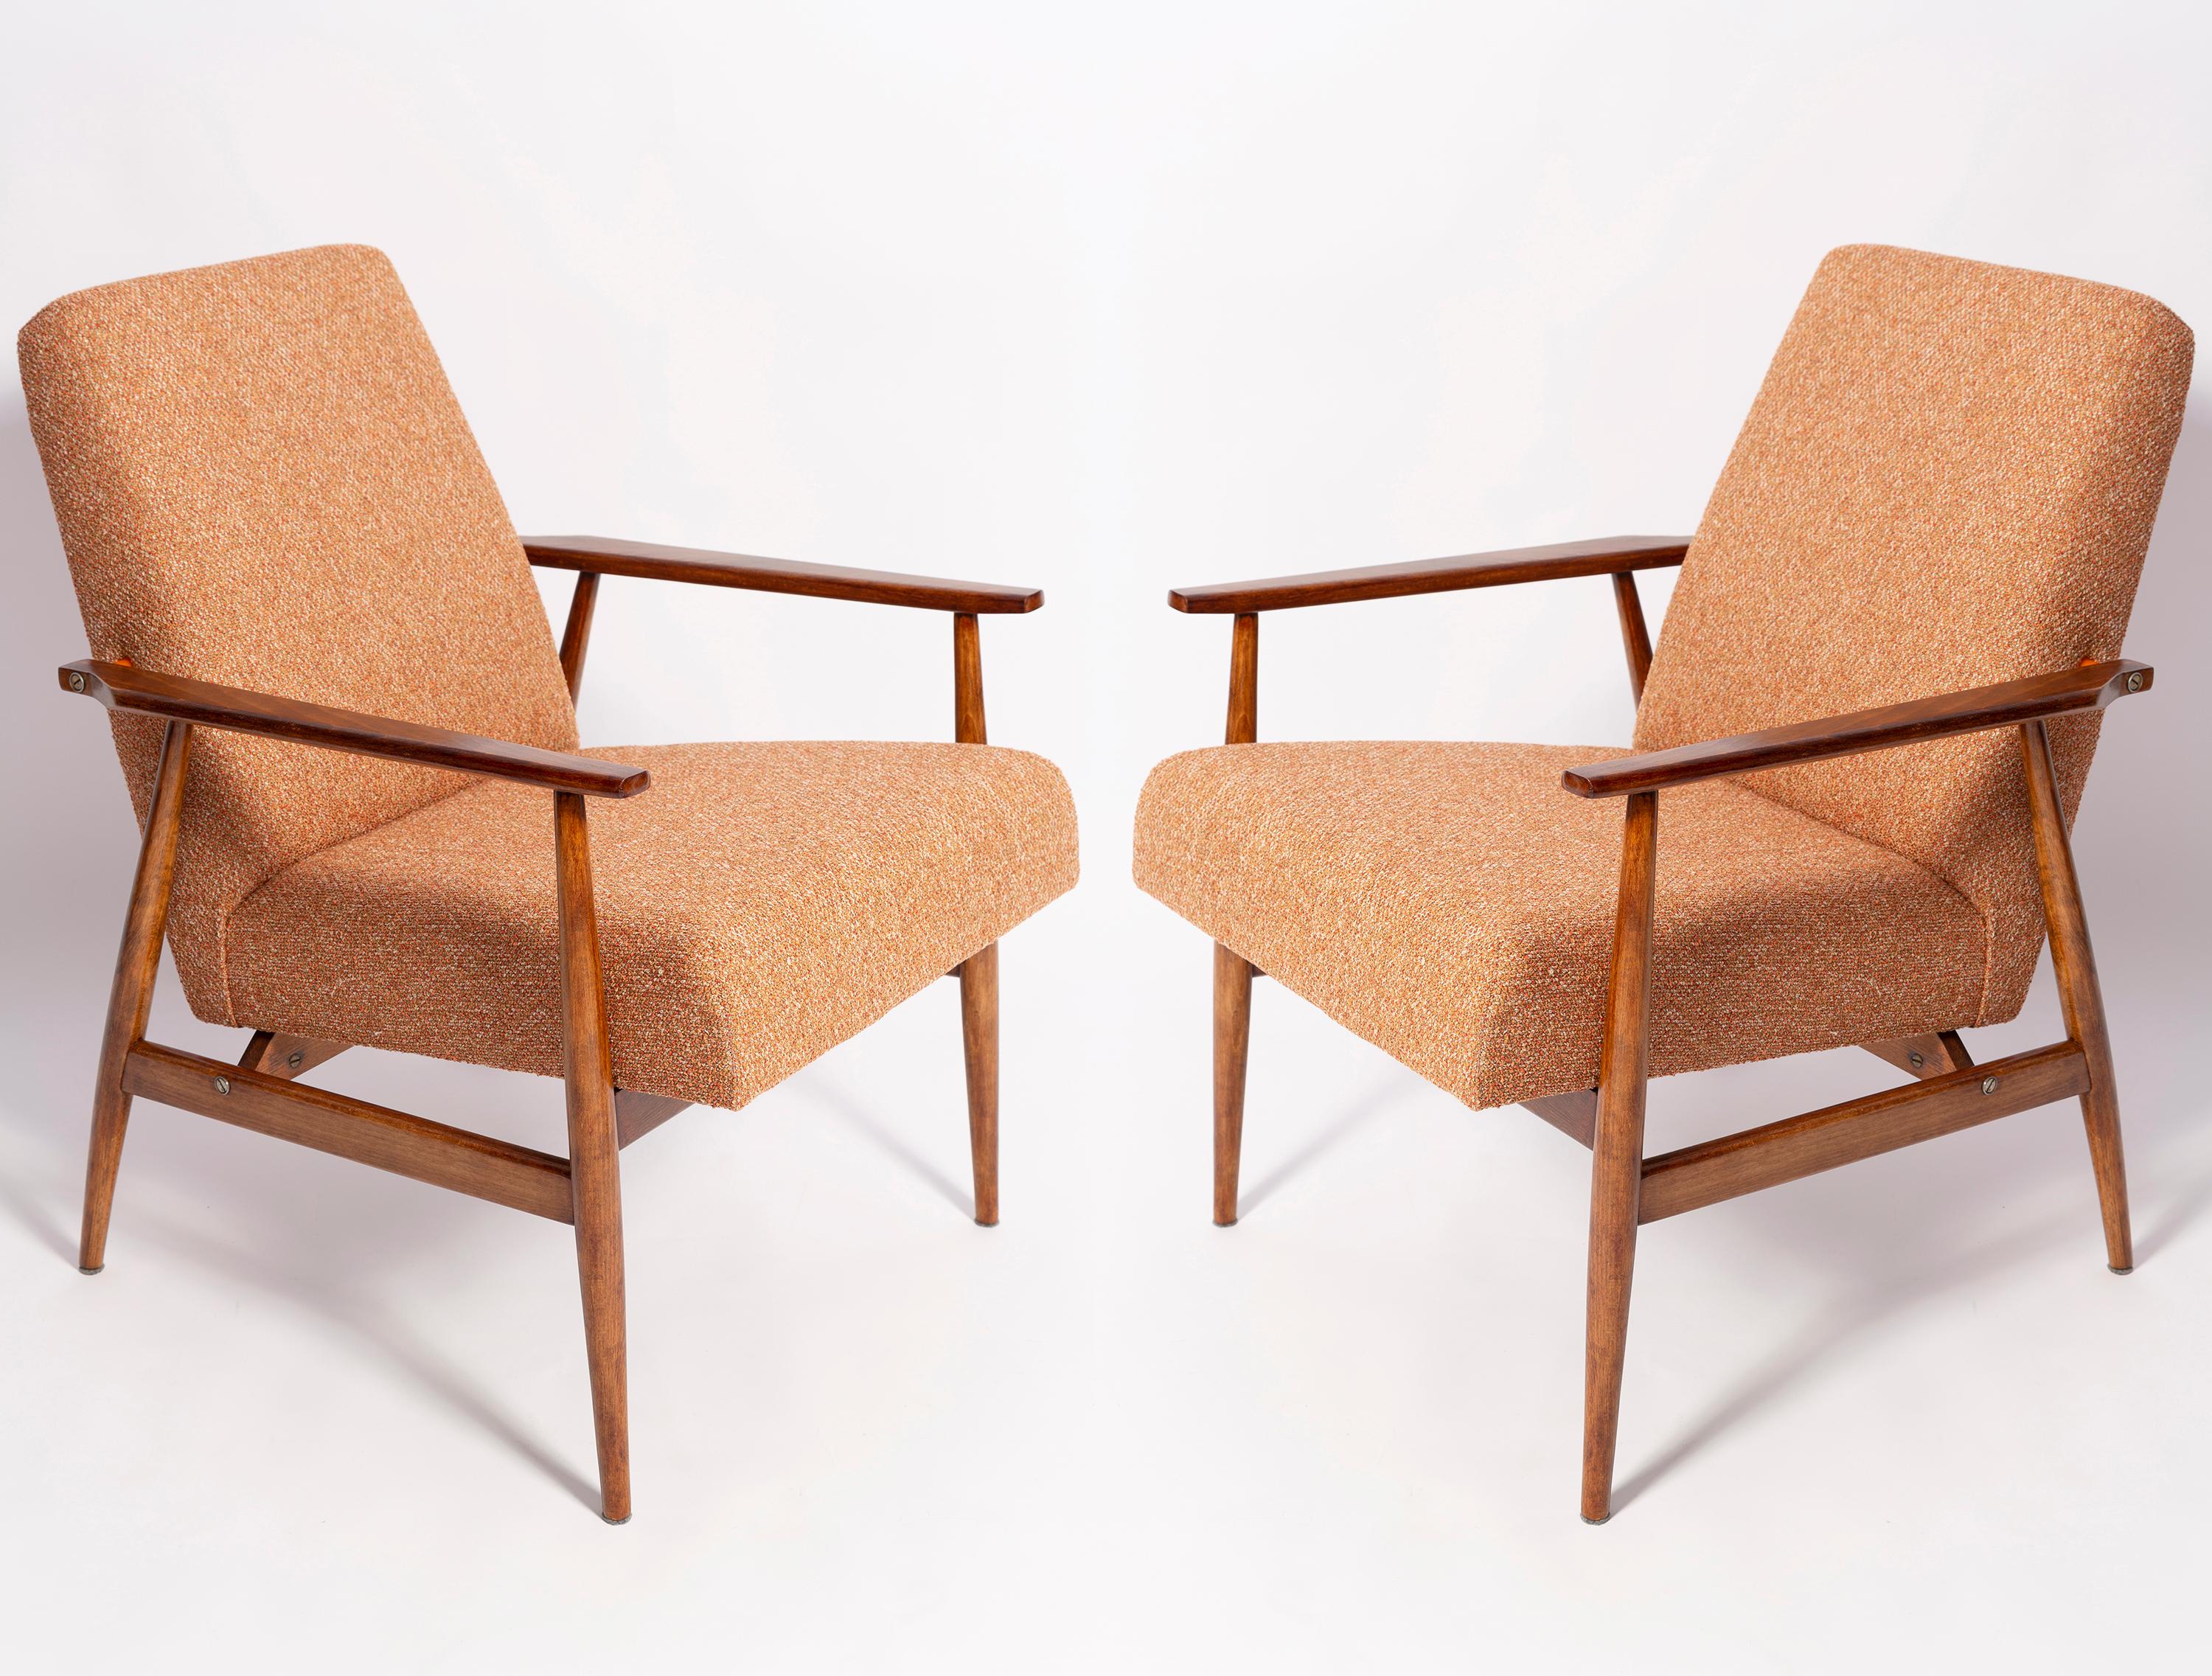 Un beau fauteuil restauré, conçu par Henryk Lis. Meubles après une rénovation complète de la menuiserie et de la tapisserie. Le tissu, qui recouvre le dossier et l'assise, est un revêtement mélangé italien de haute qualité de couleur orange. Le